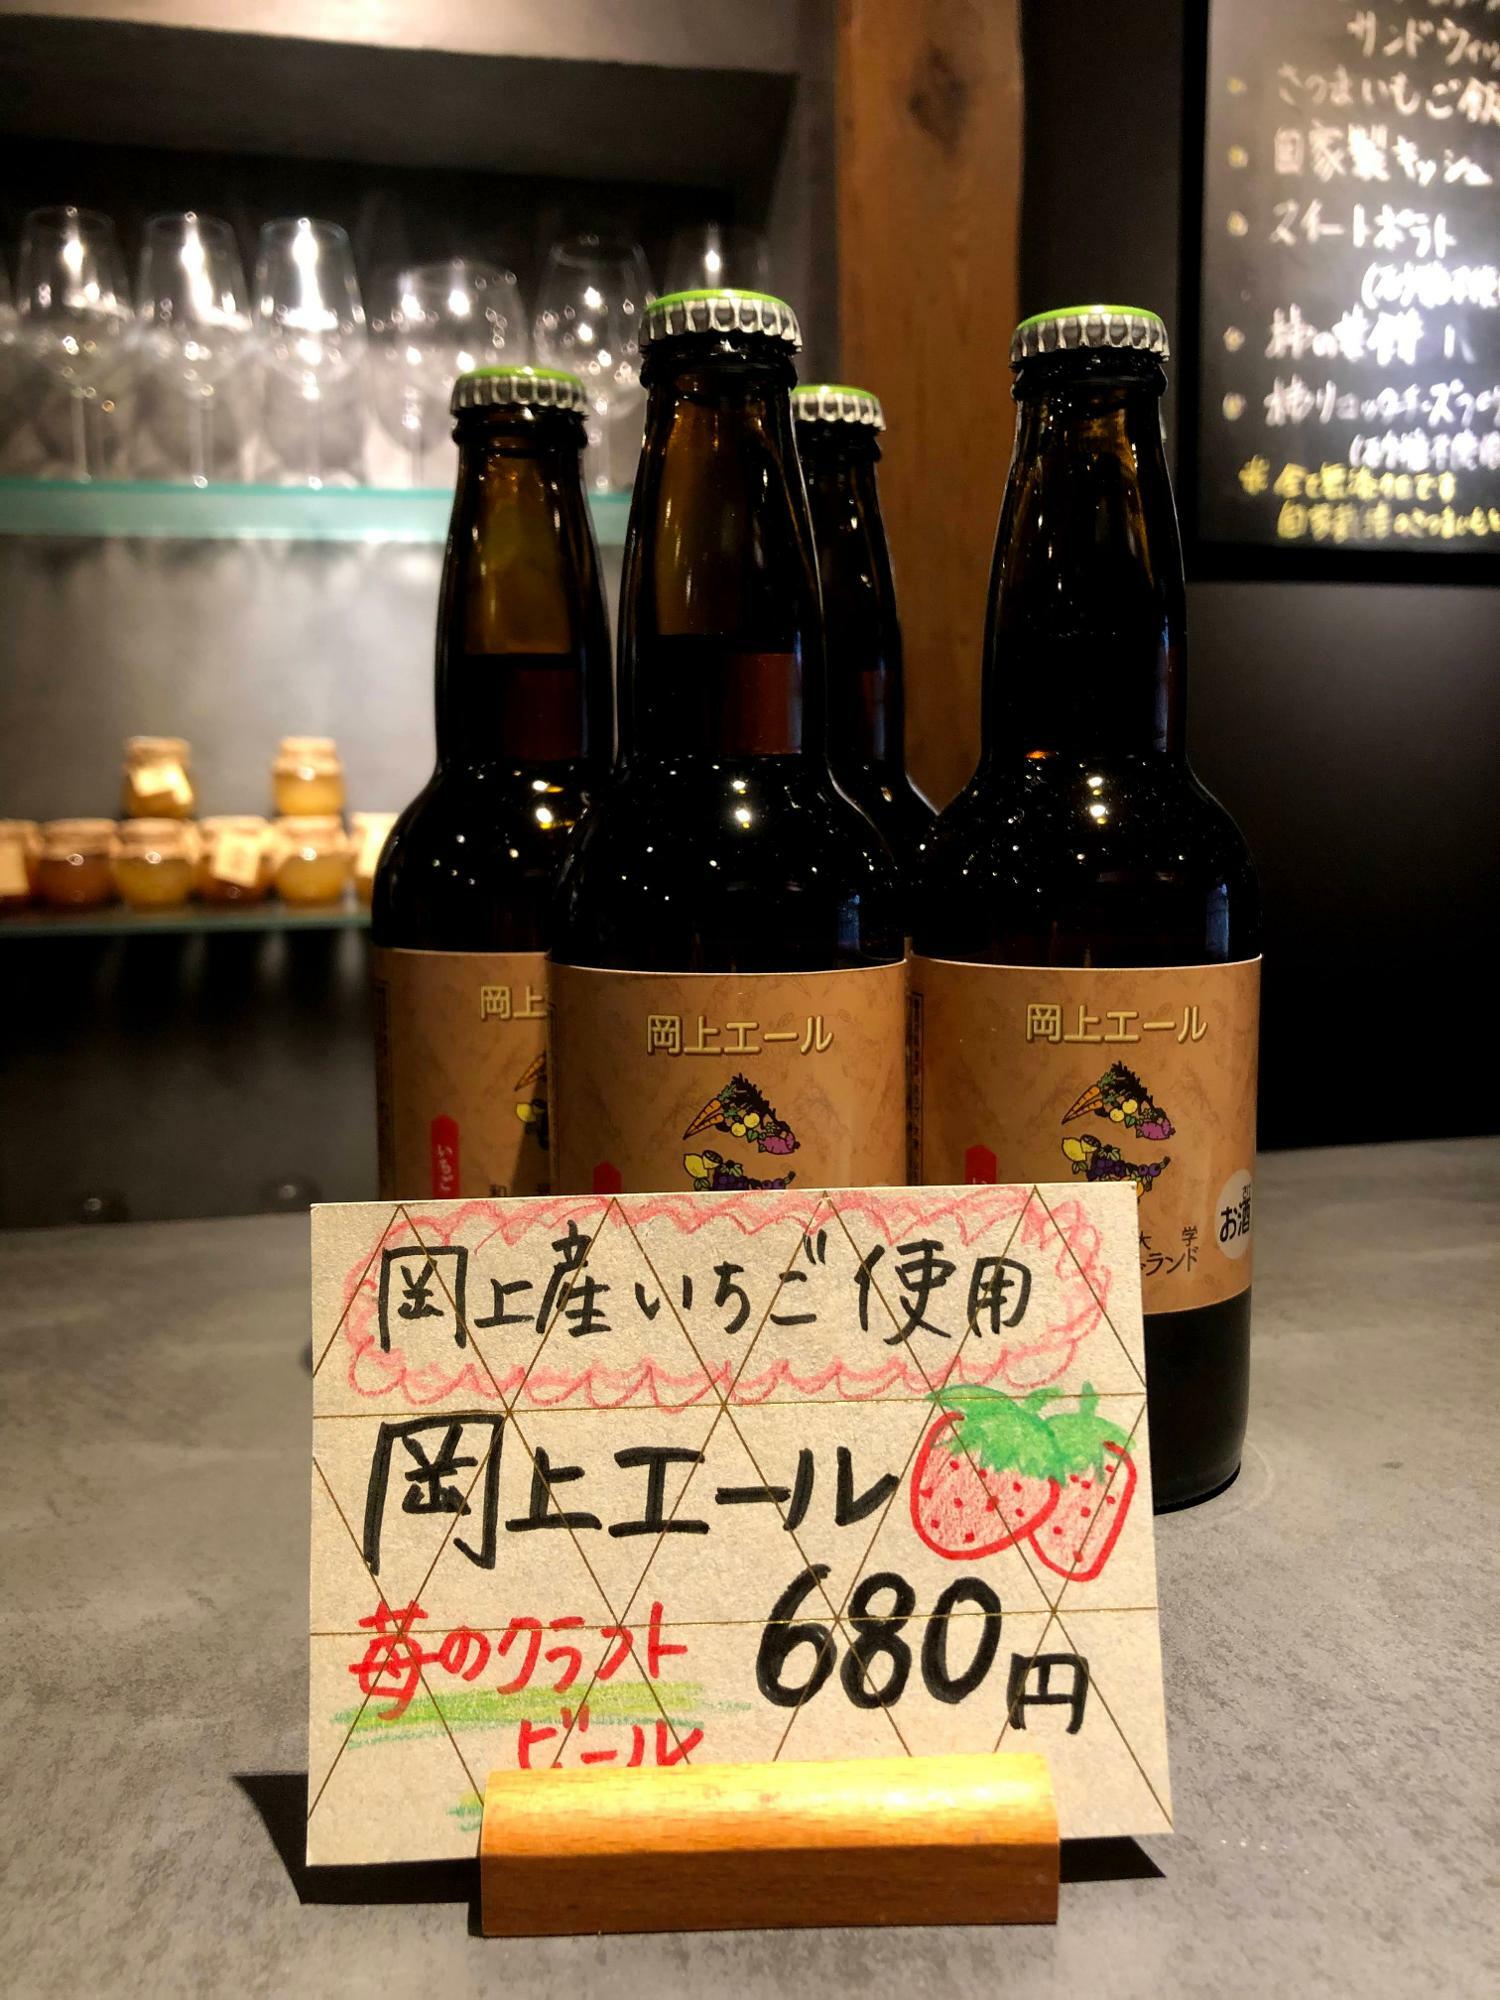 「生産品のブランディング」の一例、岡上のいちごをつかたクラフトビール は、既に川崎市でも人気